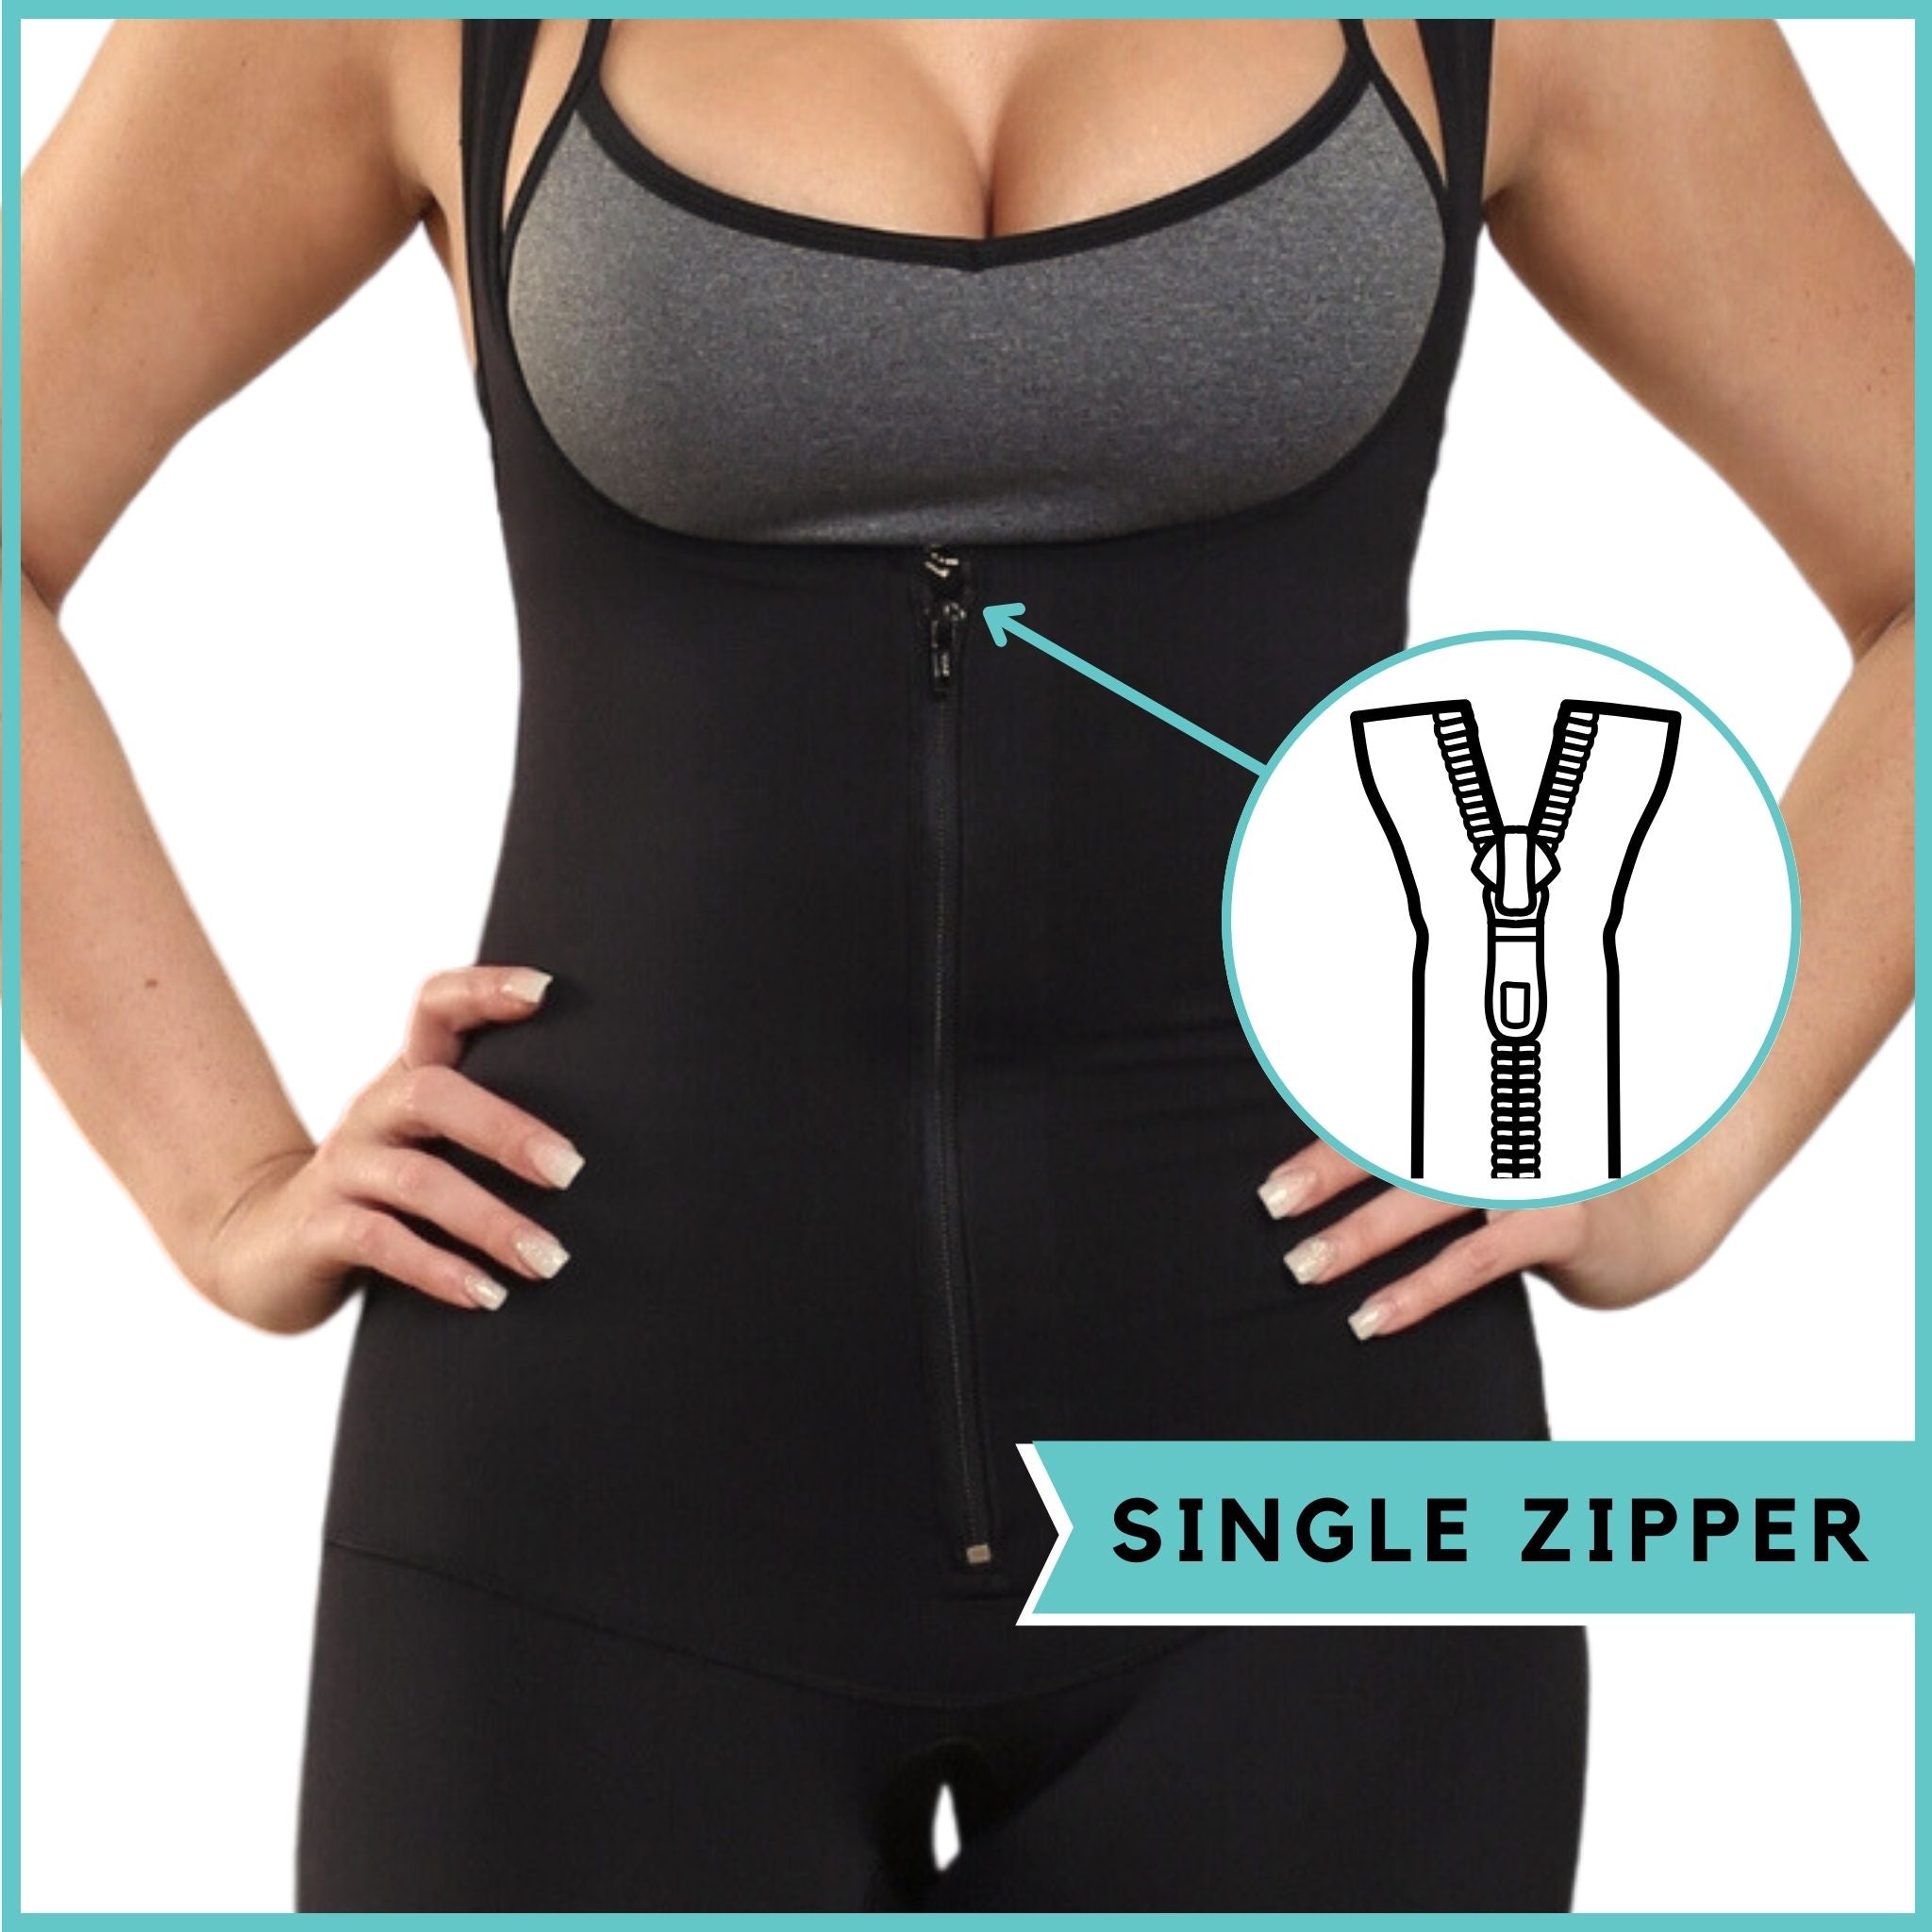 Neoprene Fabric Womens Body Shaper With Zipper & Hook, Double